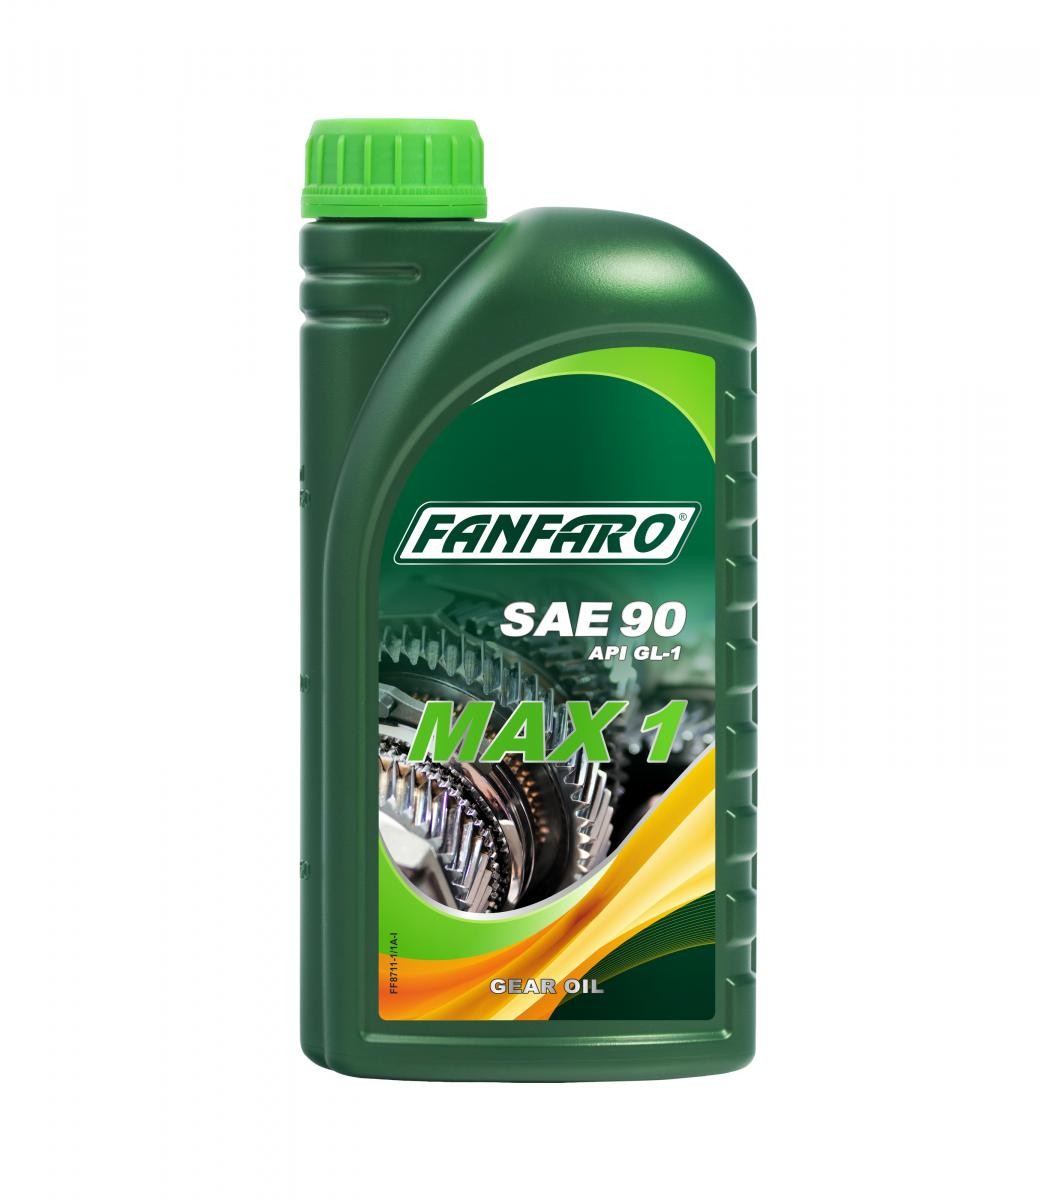 FF8711-1 FANFARO Gearbox oil SUBARU SAE 90, Capacity: 1l